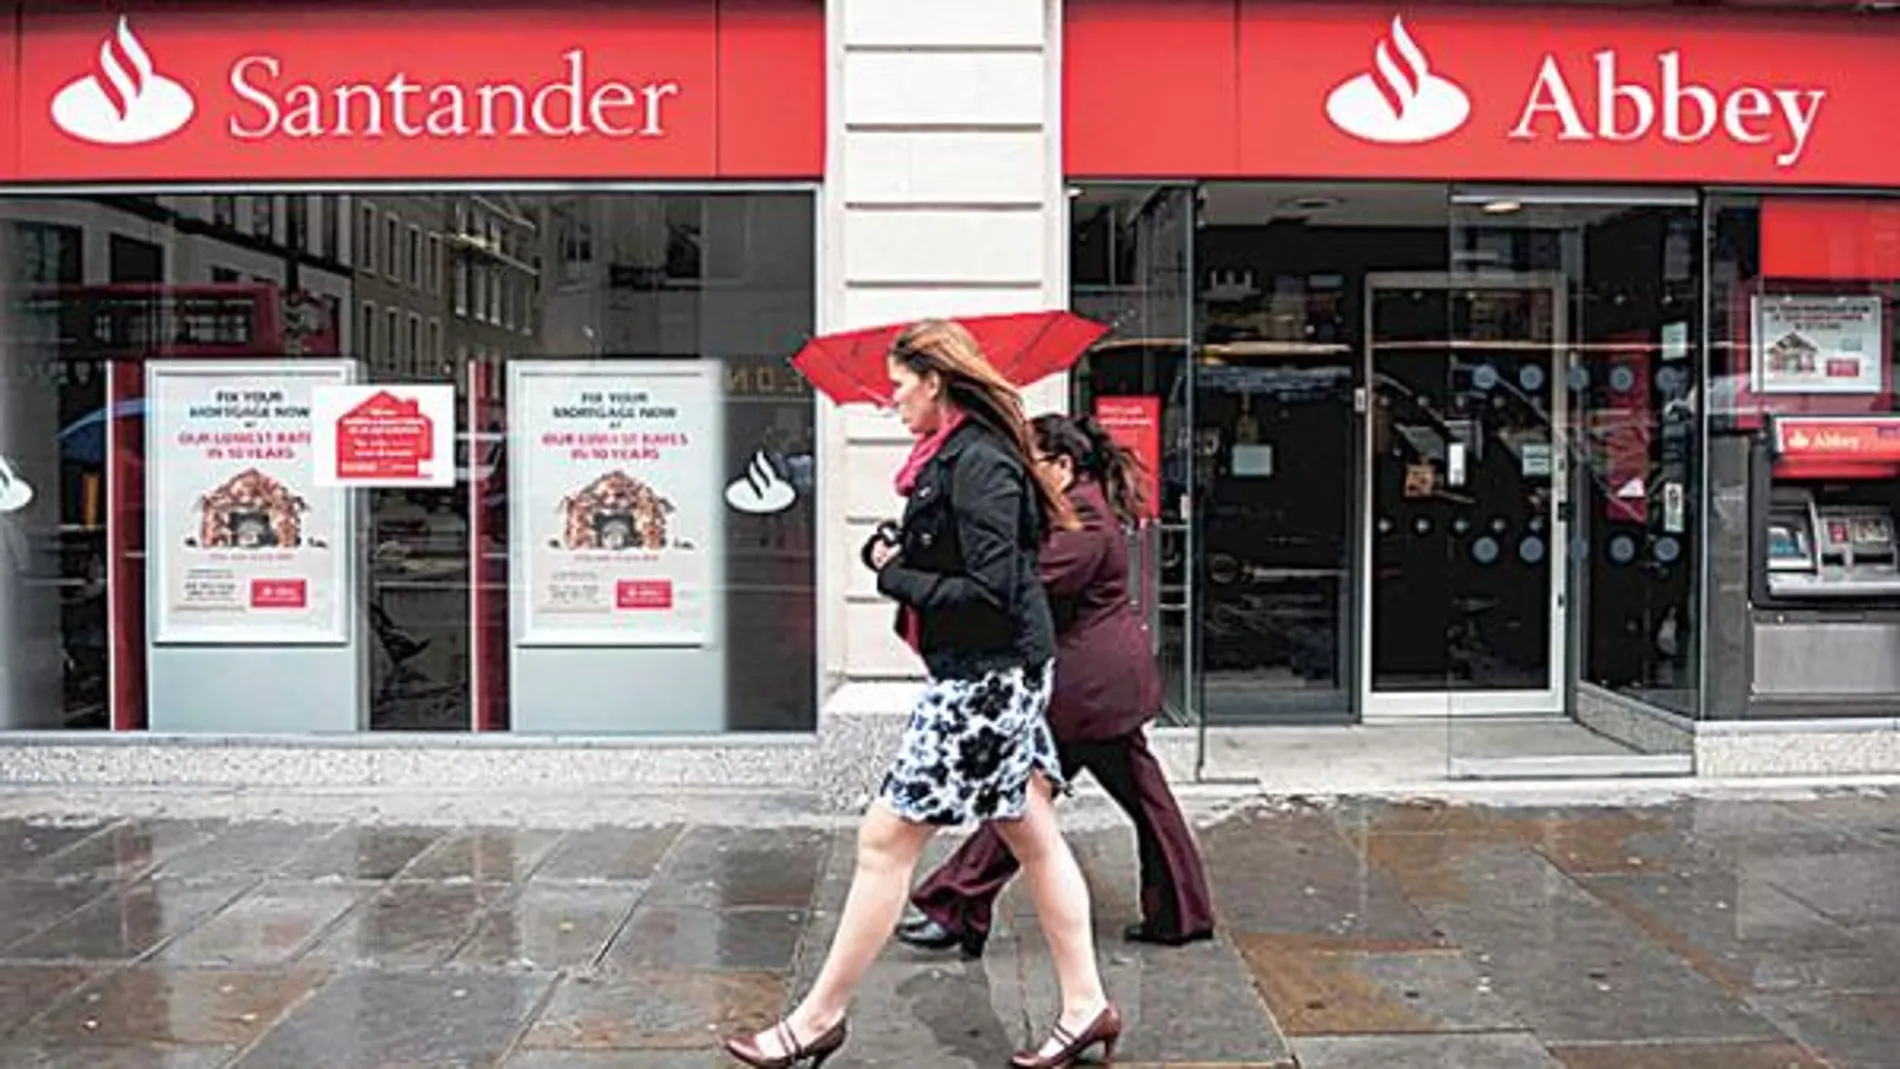 Santander unificará sus tres marcas en Reino Unido en 2010